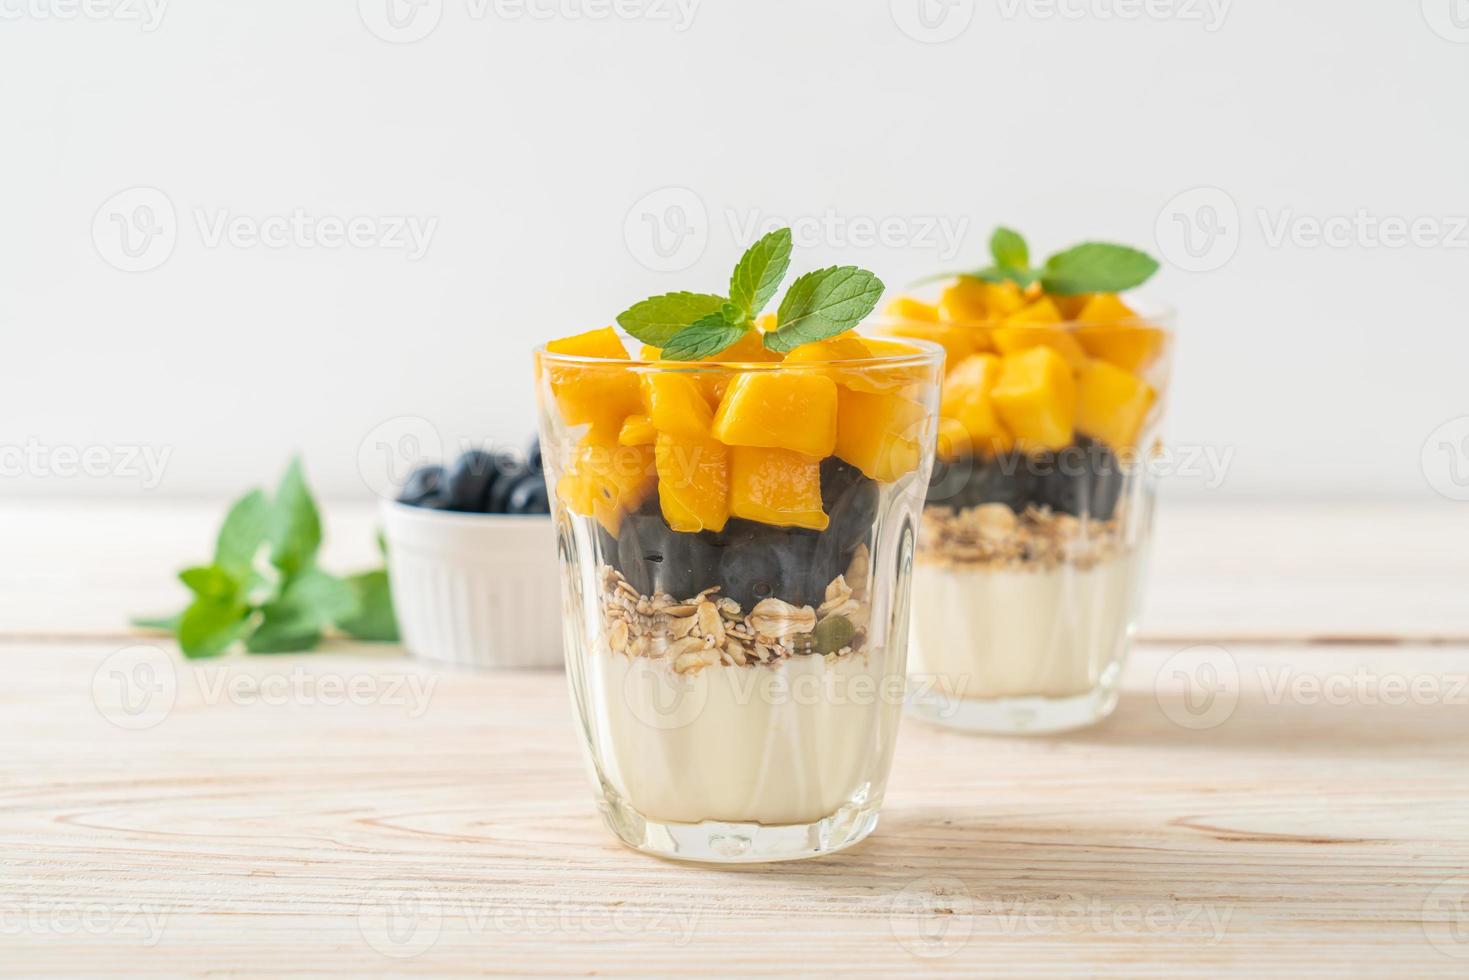 mango fresco casero y arándanos frescos con yogur y granola - estilo de comida saludable foto